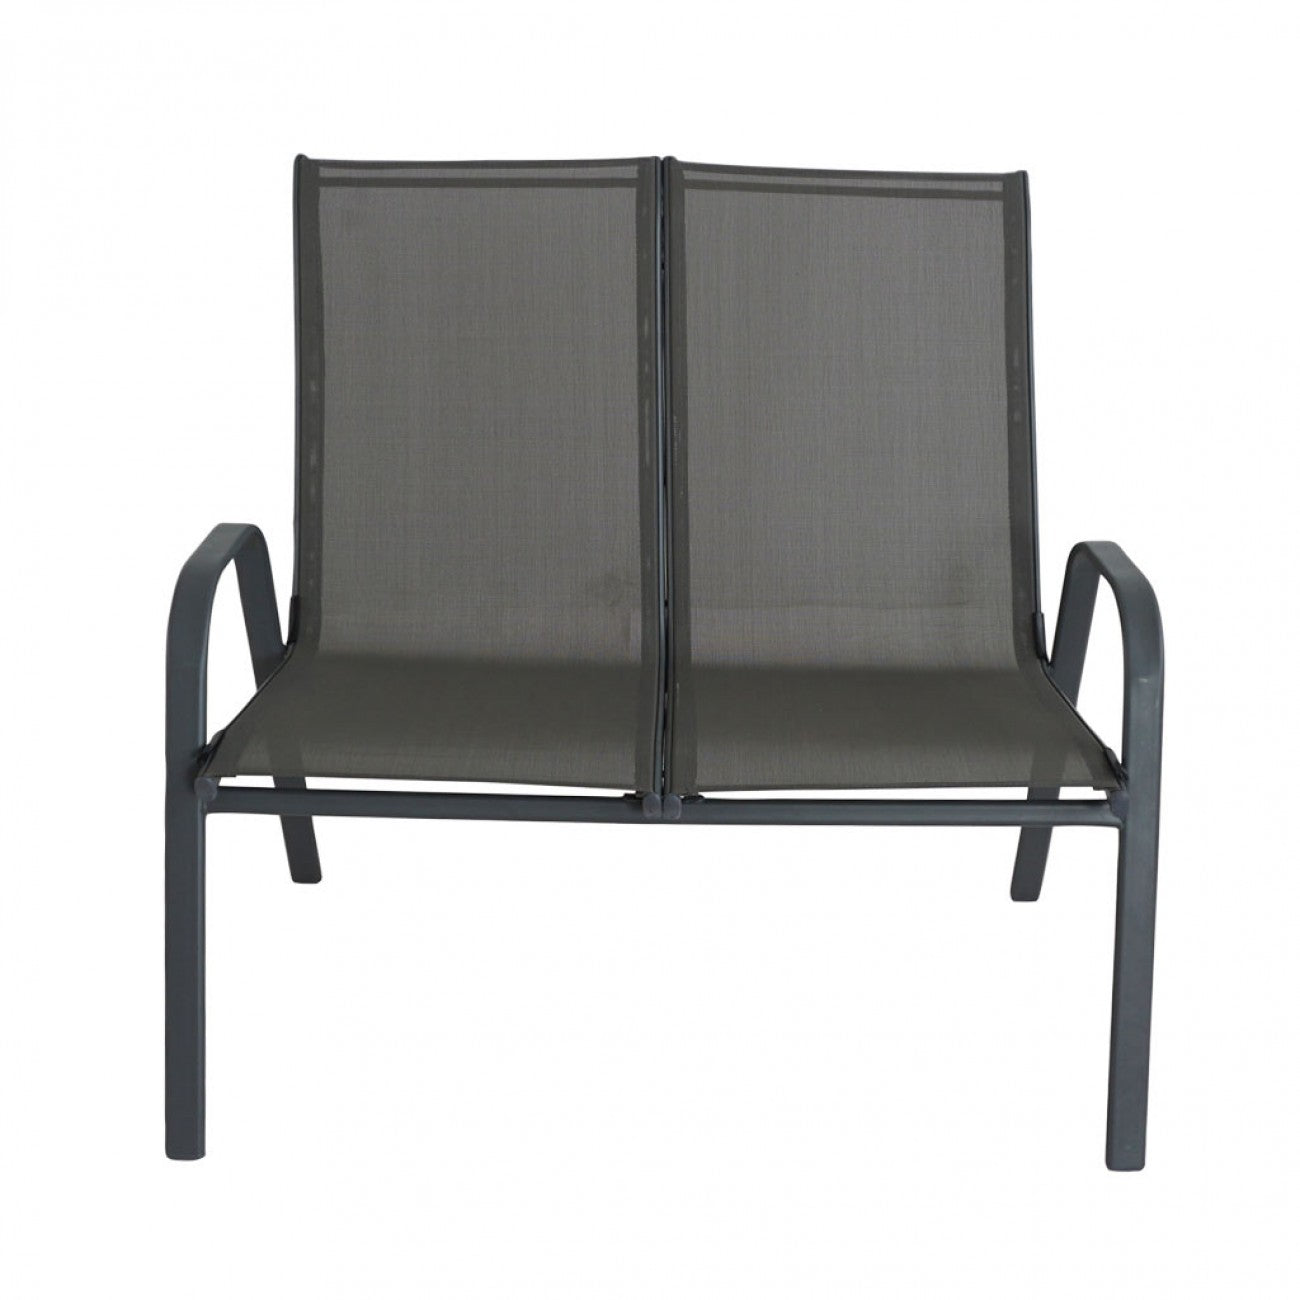 Santiago Double Chair Set - Grey (2 pcs.)